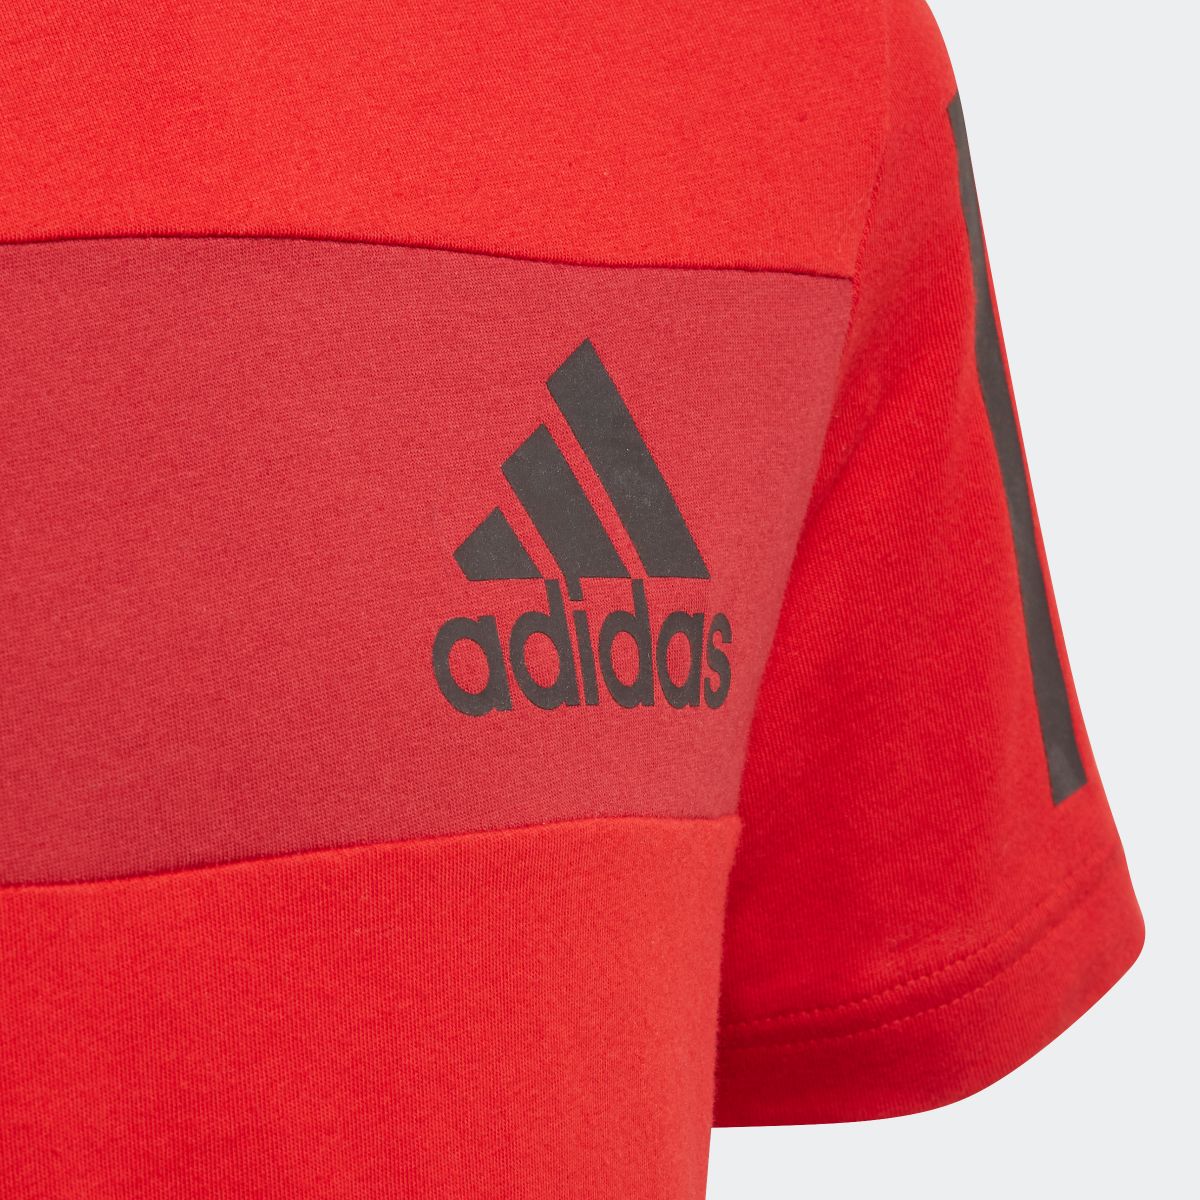 【公式】アディダス adidas スポーツ ID Tシャツ [Sport ID Tee] キッズ ウェア トップス シャツ 赤 レッド ED6504